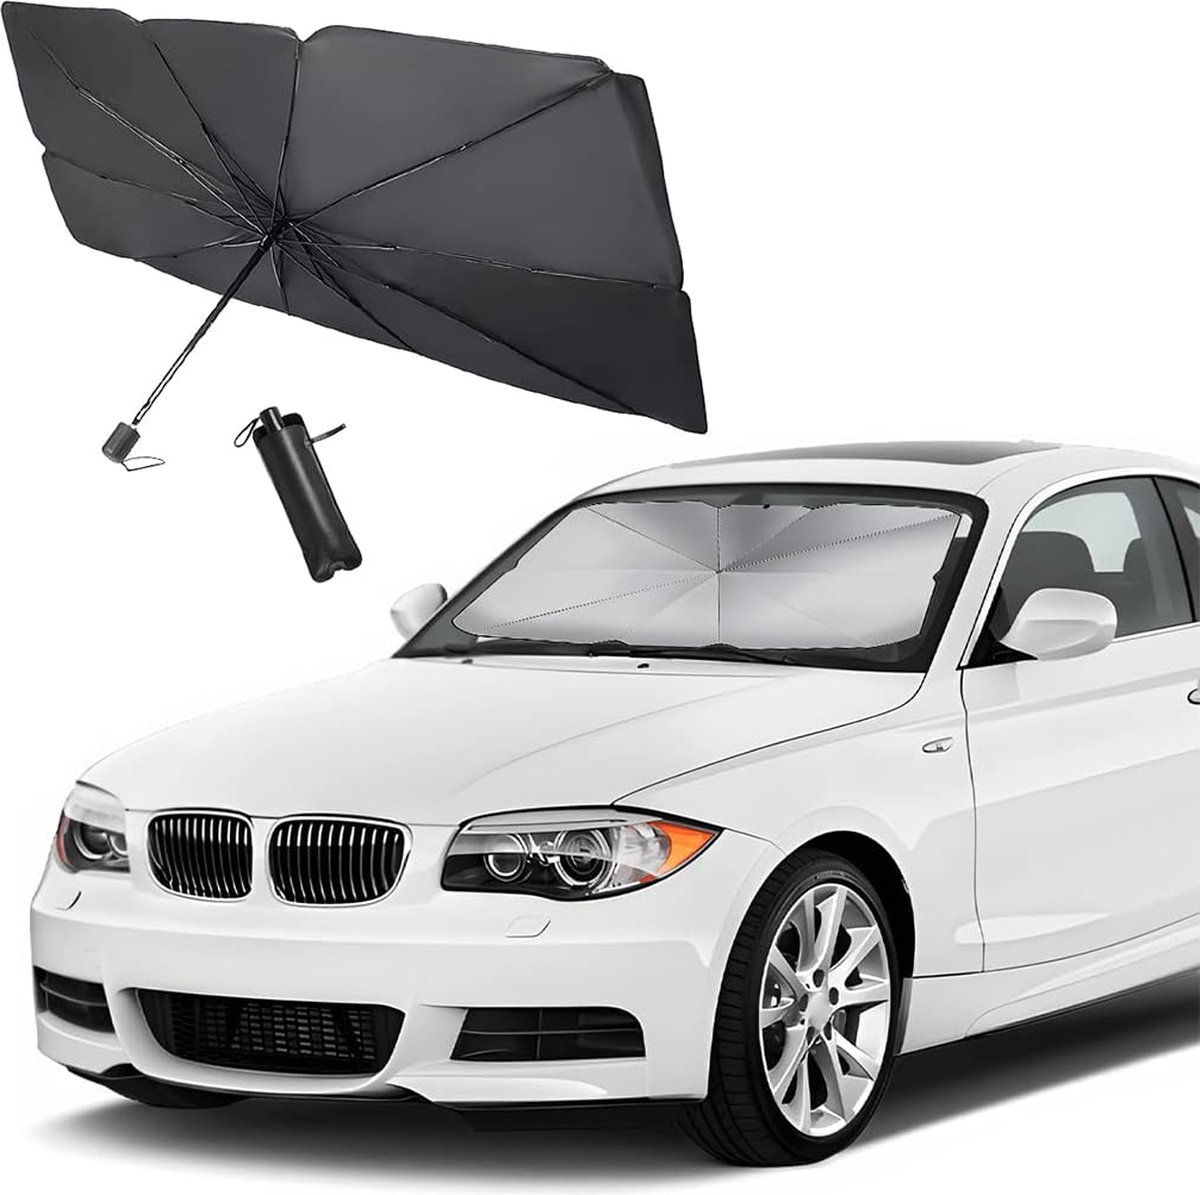 Autozonwering voorruit, auto UV-bescherming parasol voor de voorruit, zonwering auto met verstelbare stang voor de meeste auto's (groot)